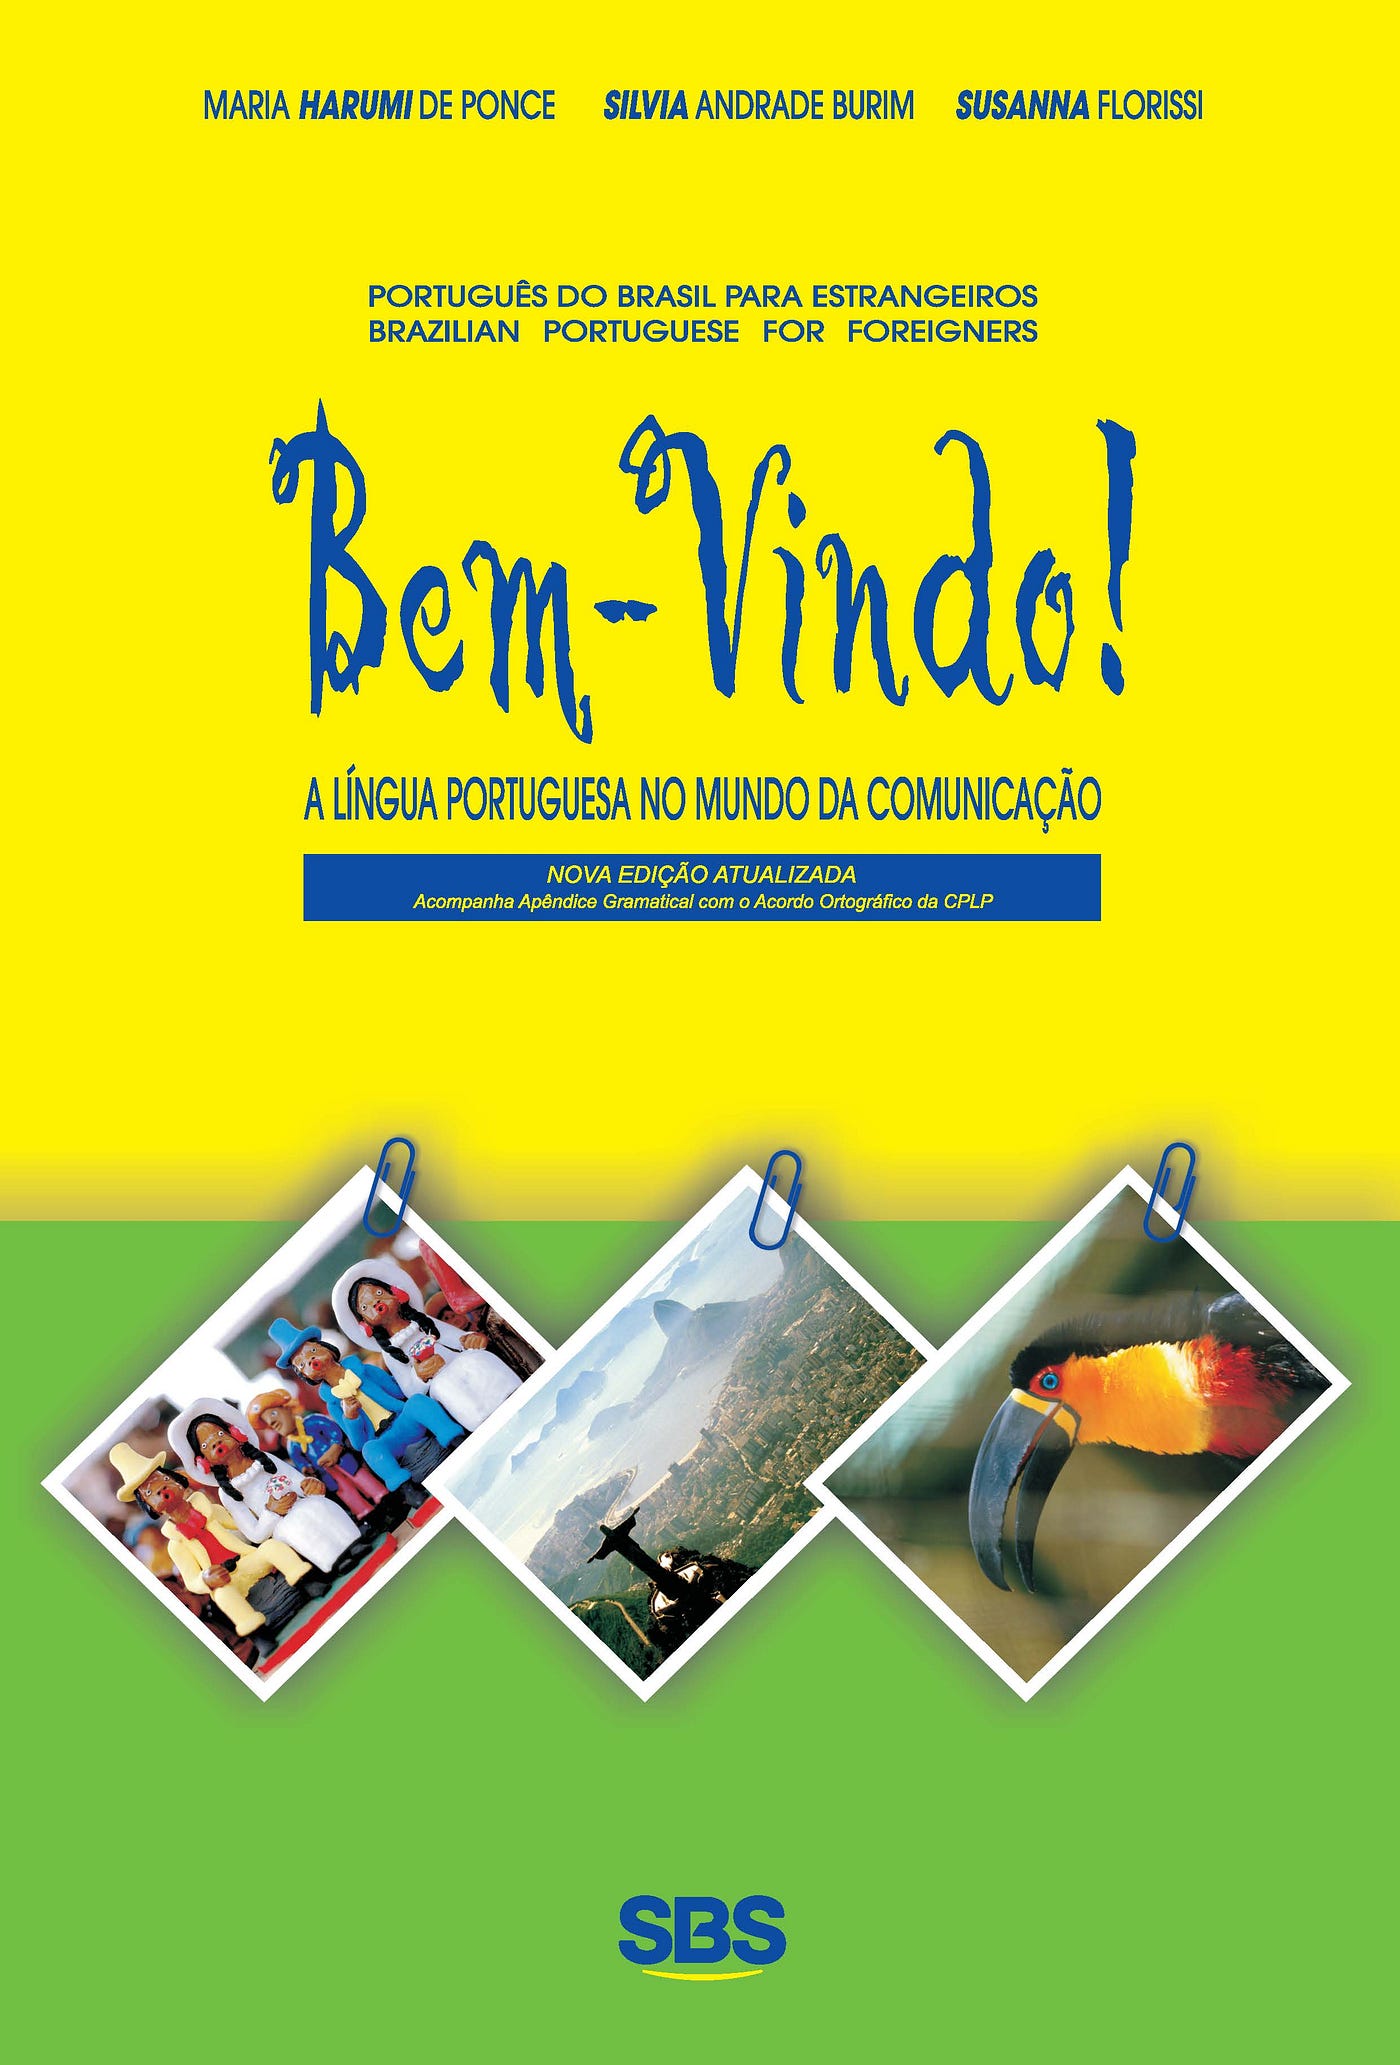 Planejamento de Aulas - Curso de Português para Estrangeiros